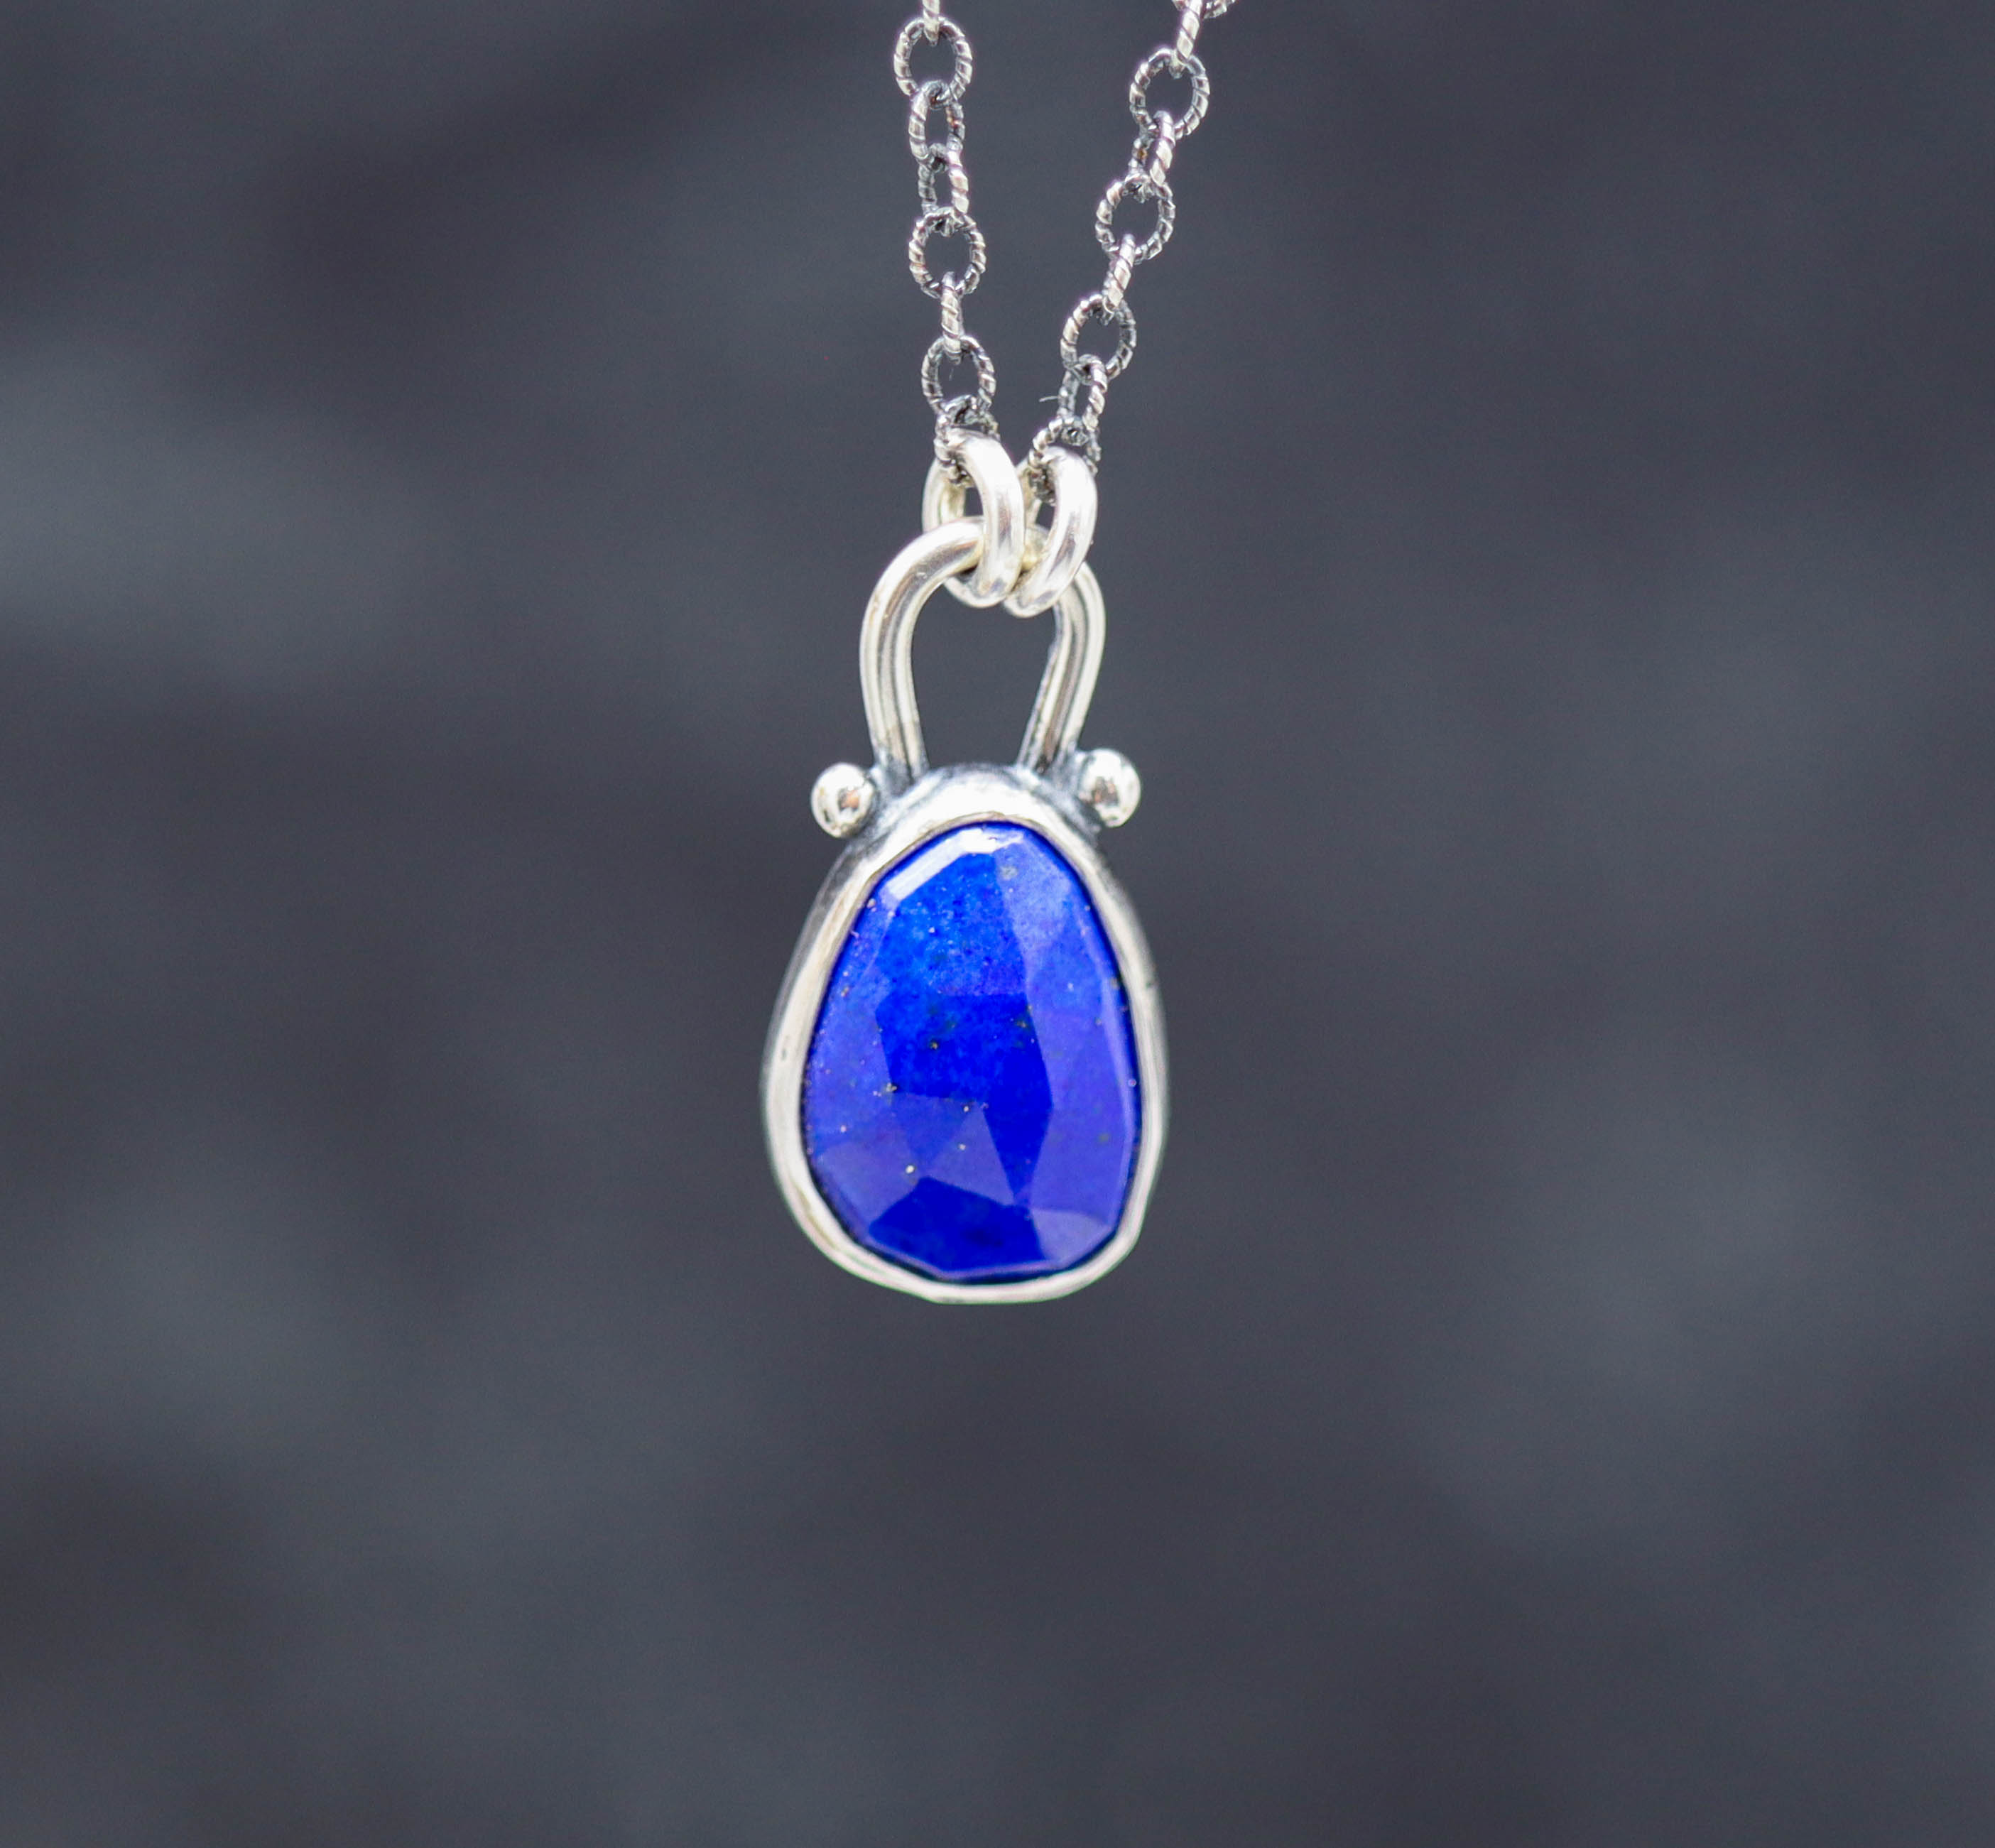 Blue Lapis Pendant Necklace Sterling Silver